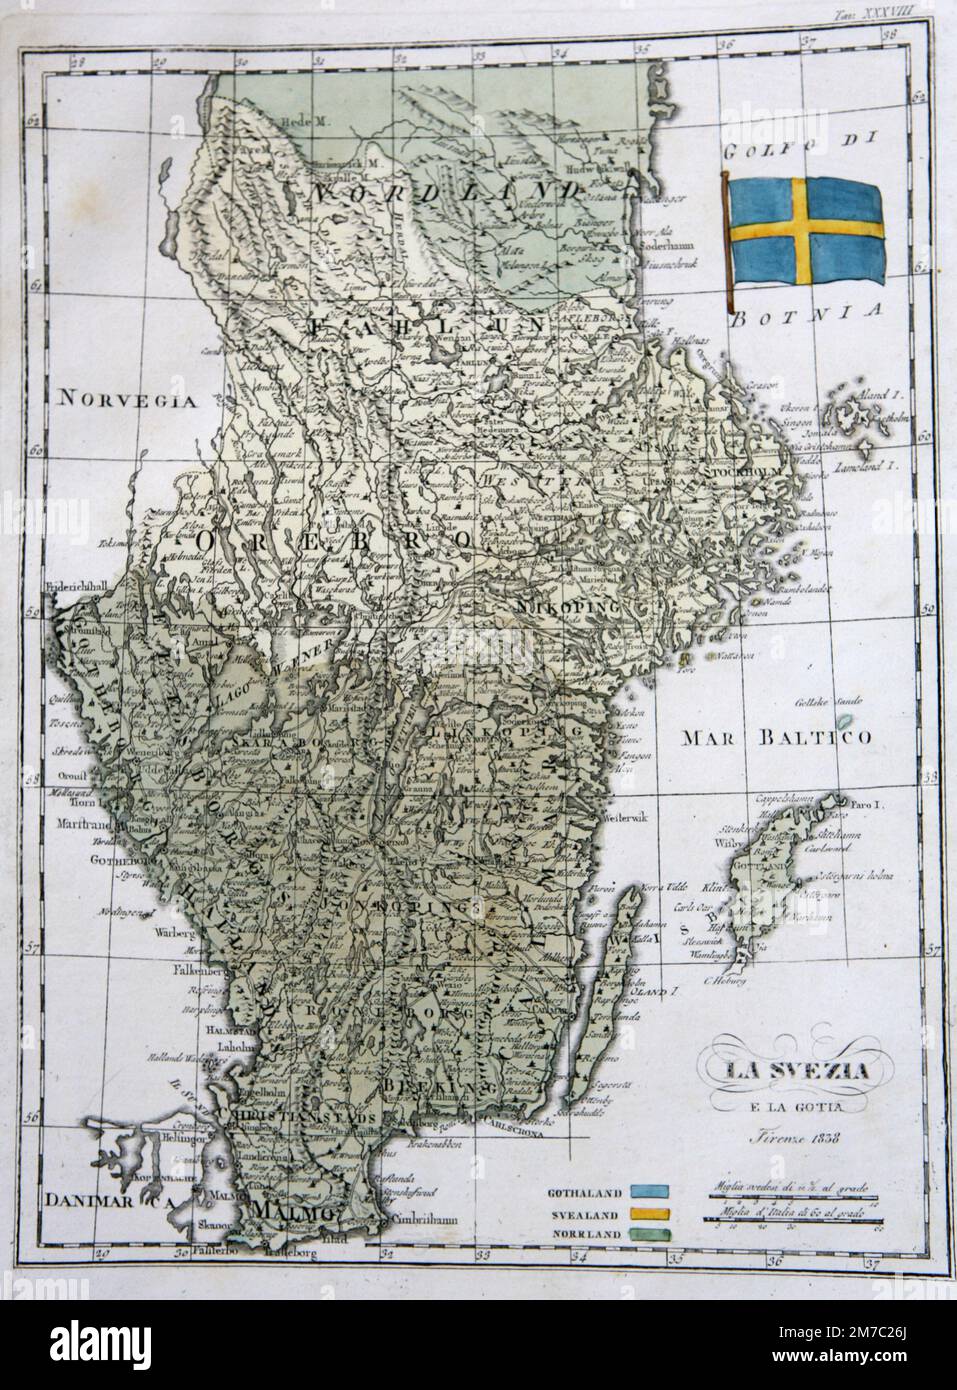 Carte de la Suède et de la Gothia, de l'Atlas Marmocchi, Florence, Italie 1838 Banque D'Images